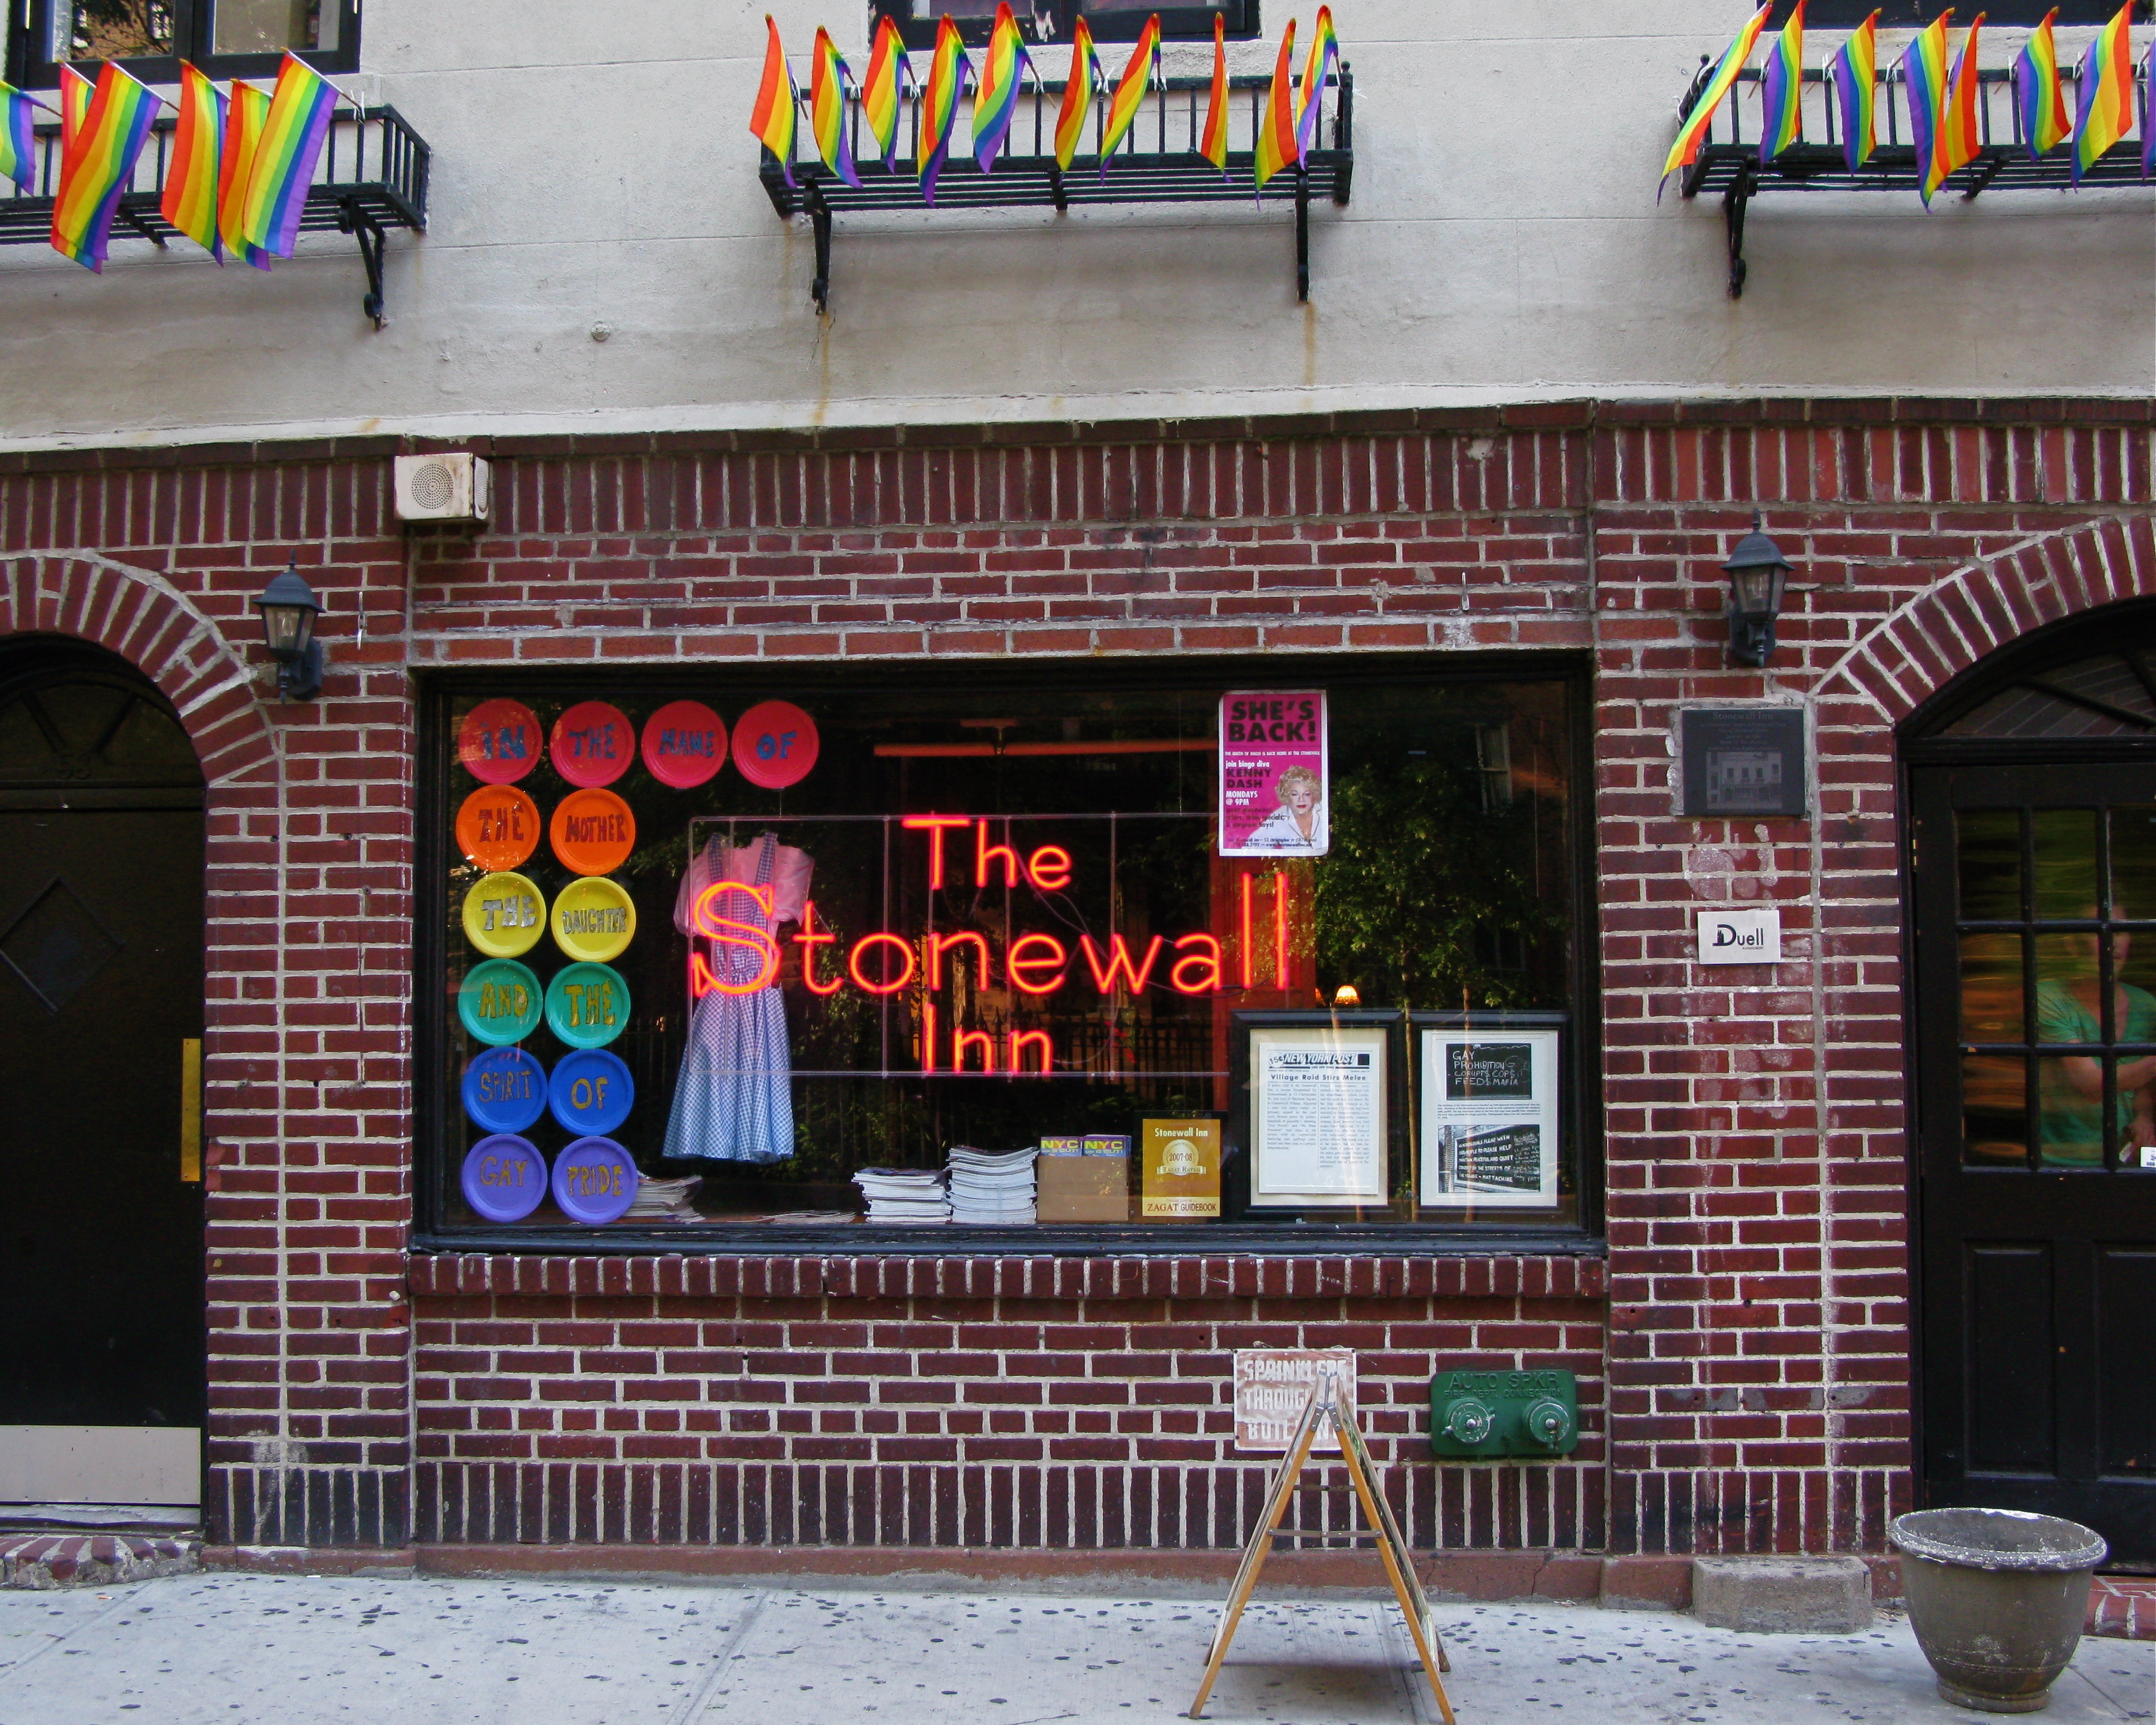 Photo of the Stonewall Inn exterior